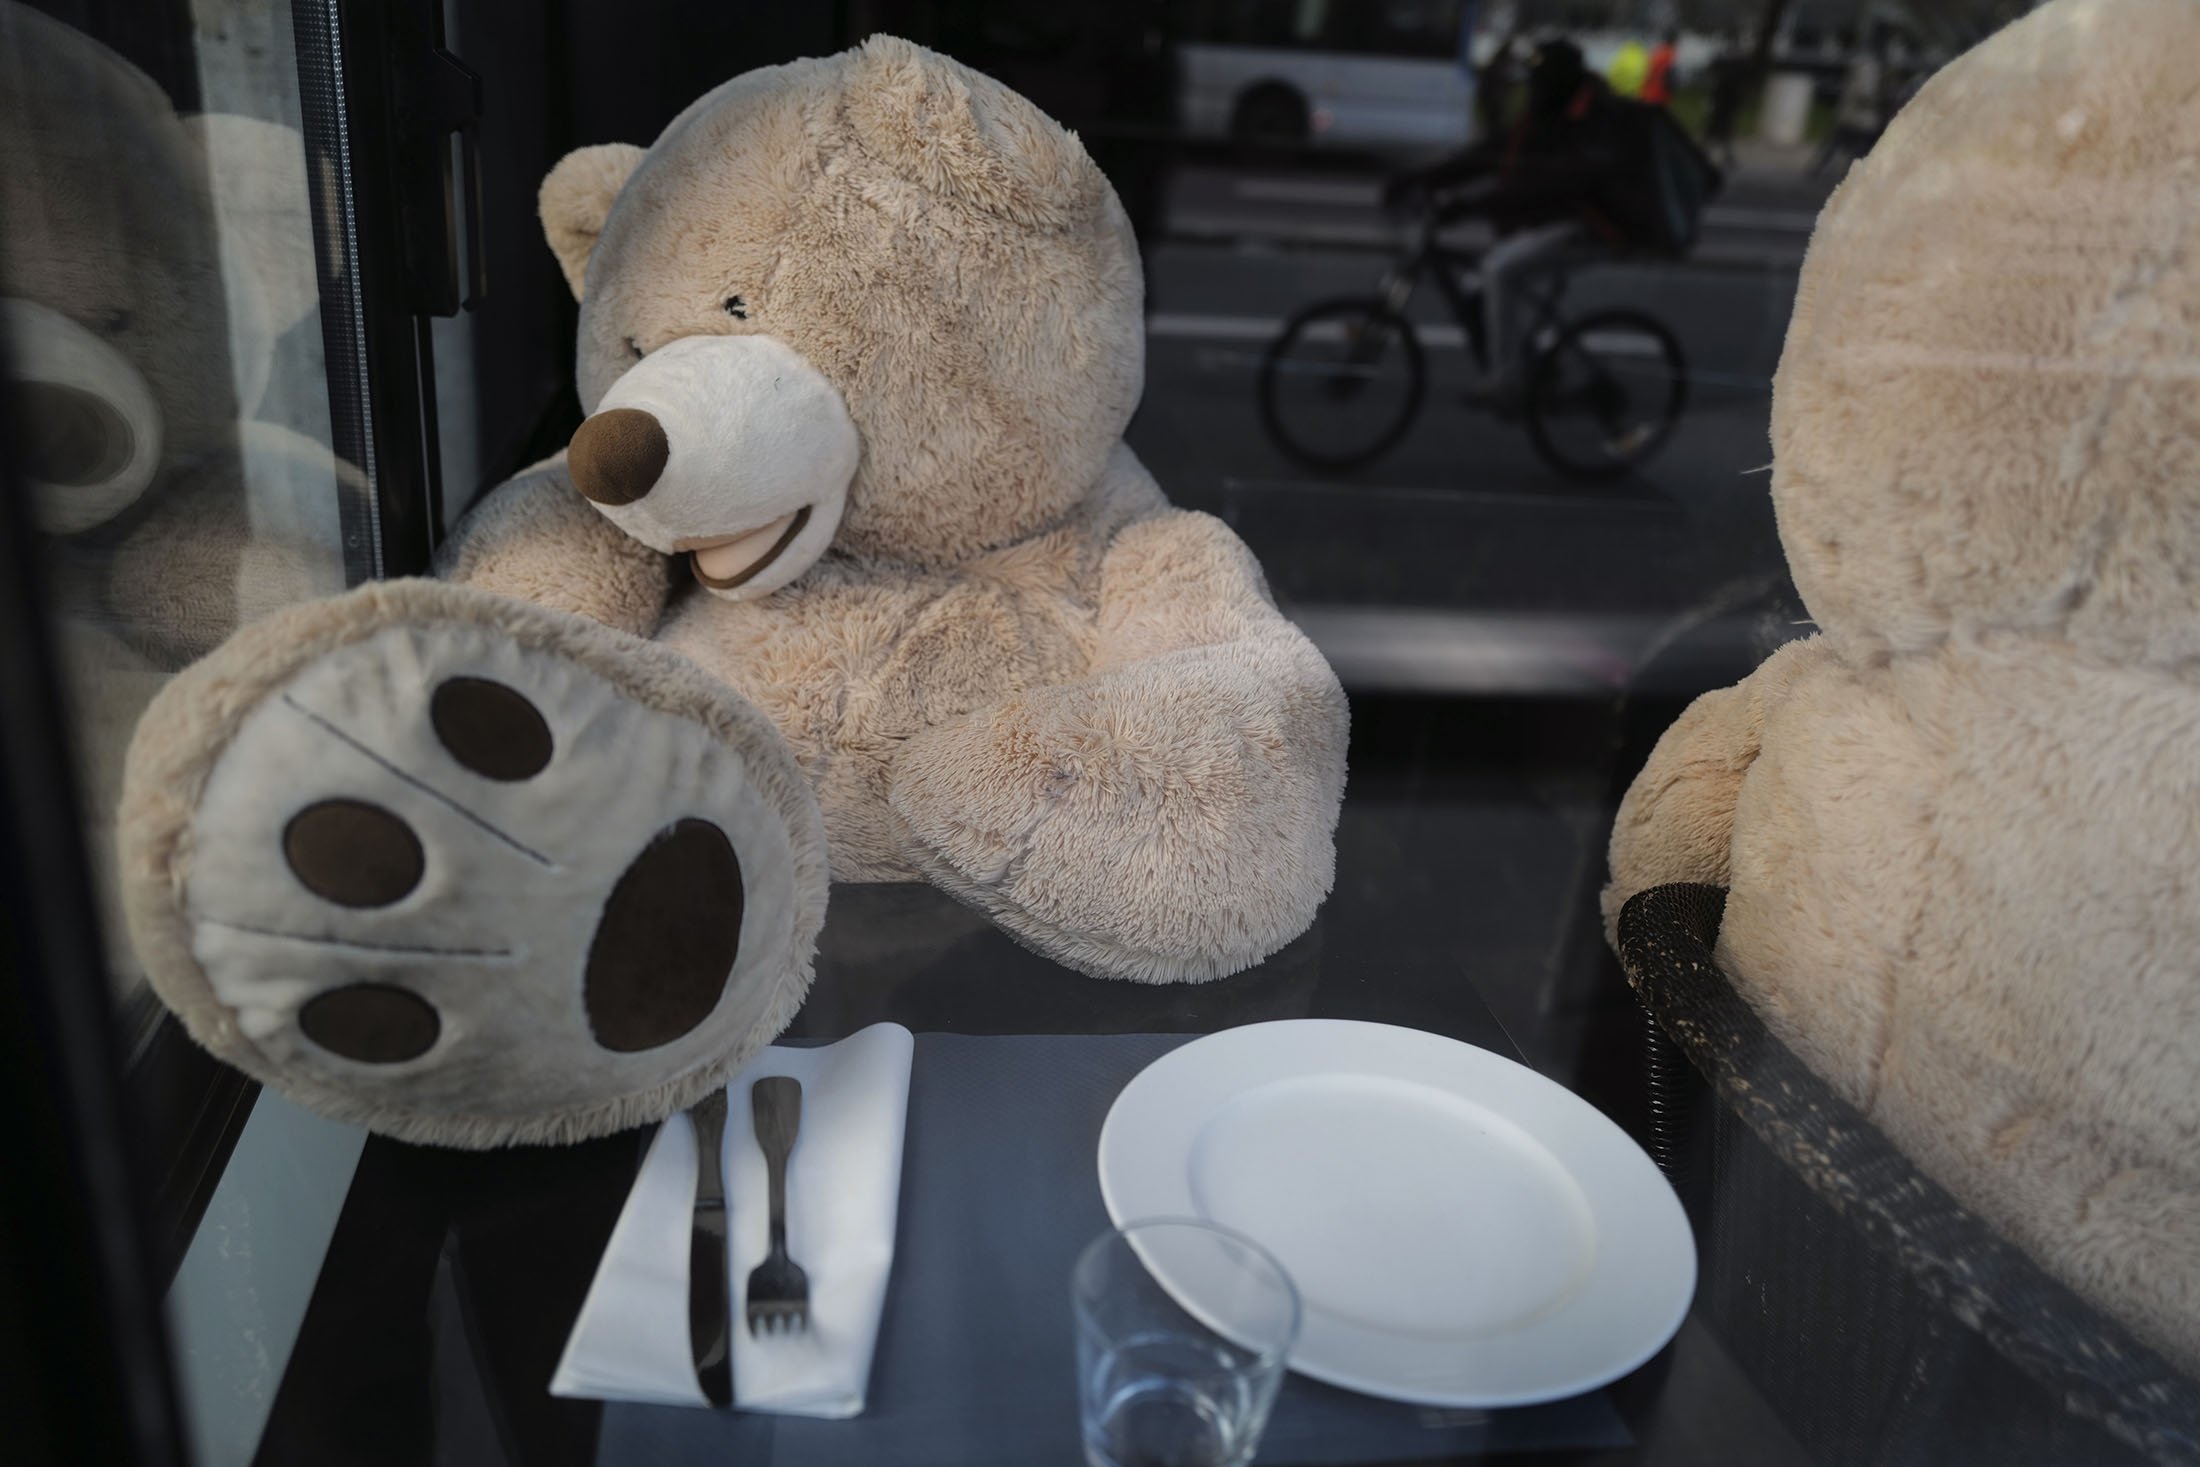 Bear teddy Teddy bears